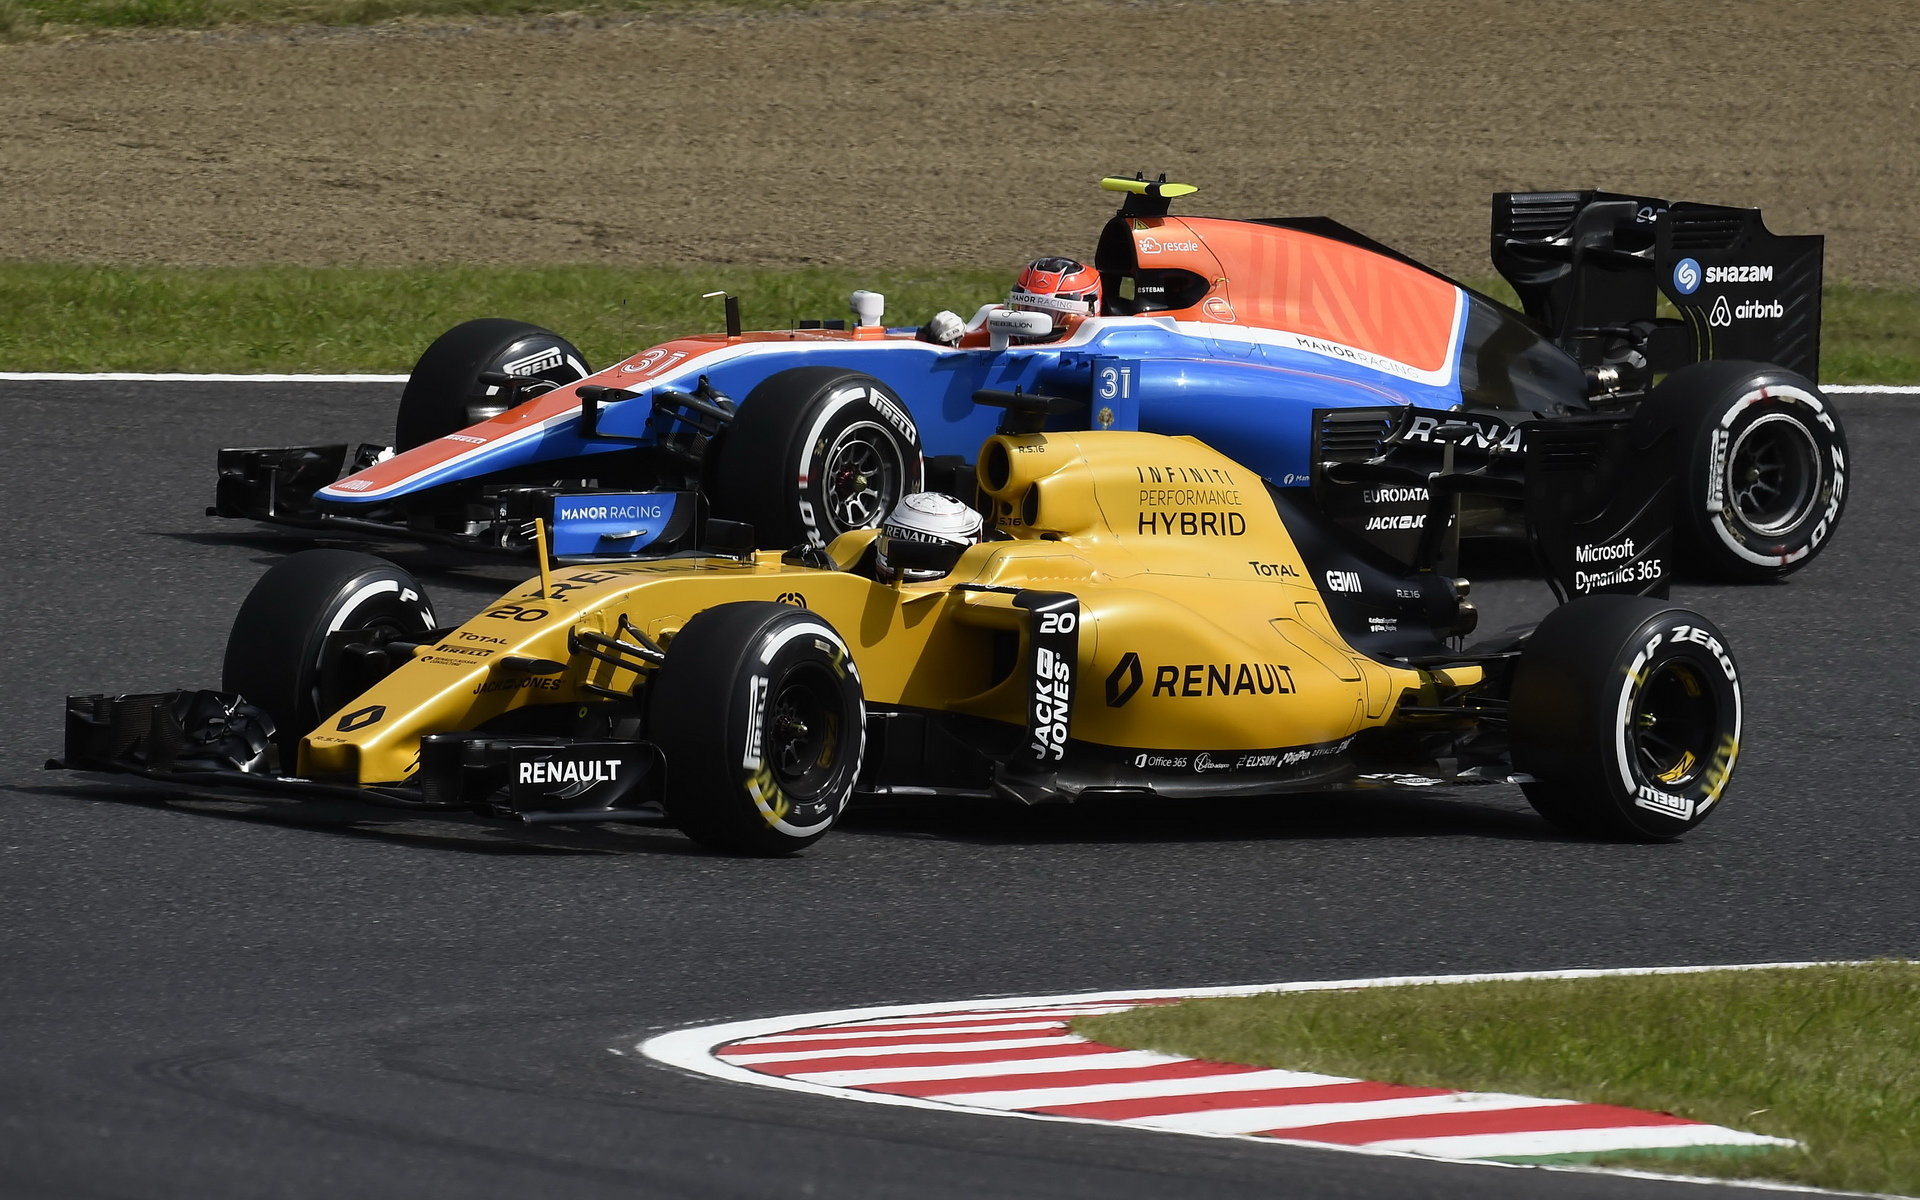 Vymění Ocon Manor za Renault?